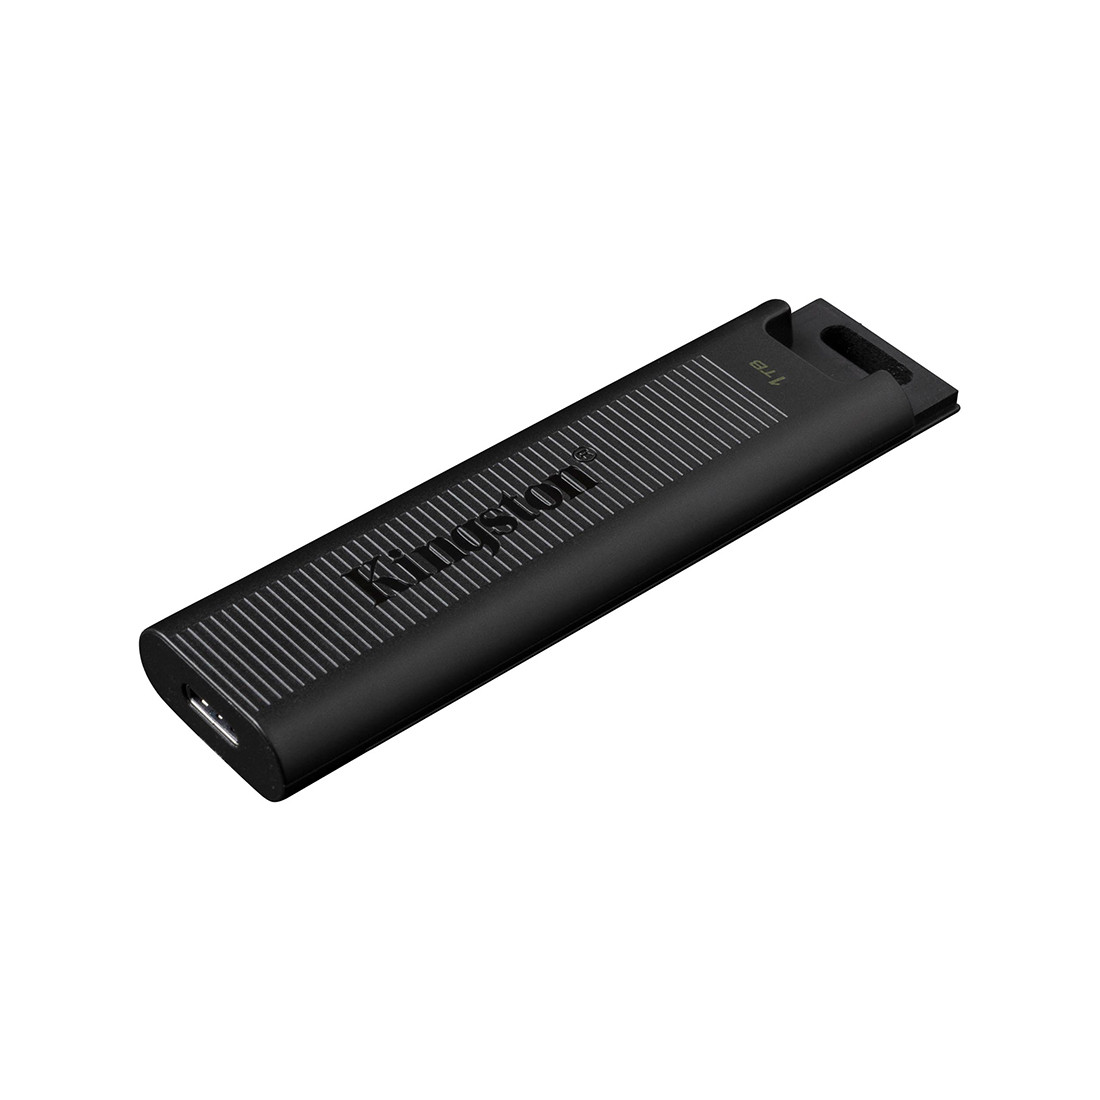 USB-накопитель Kingston DTMAX/256GB 256GB Черный, фото 1